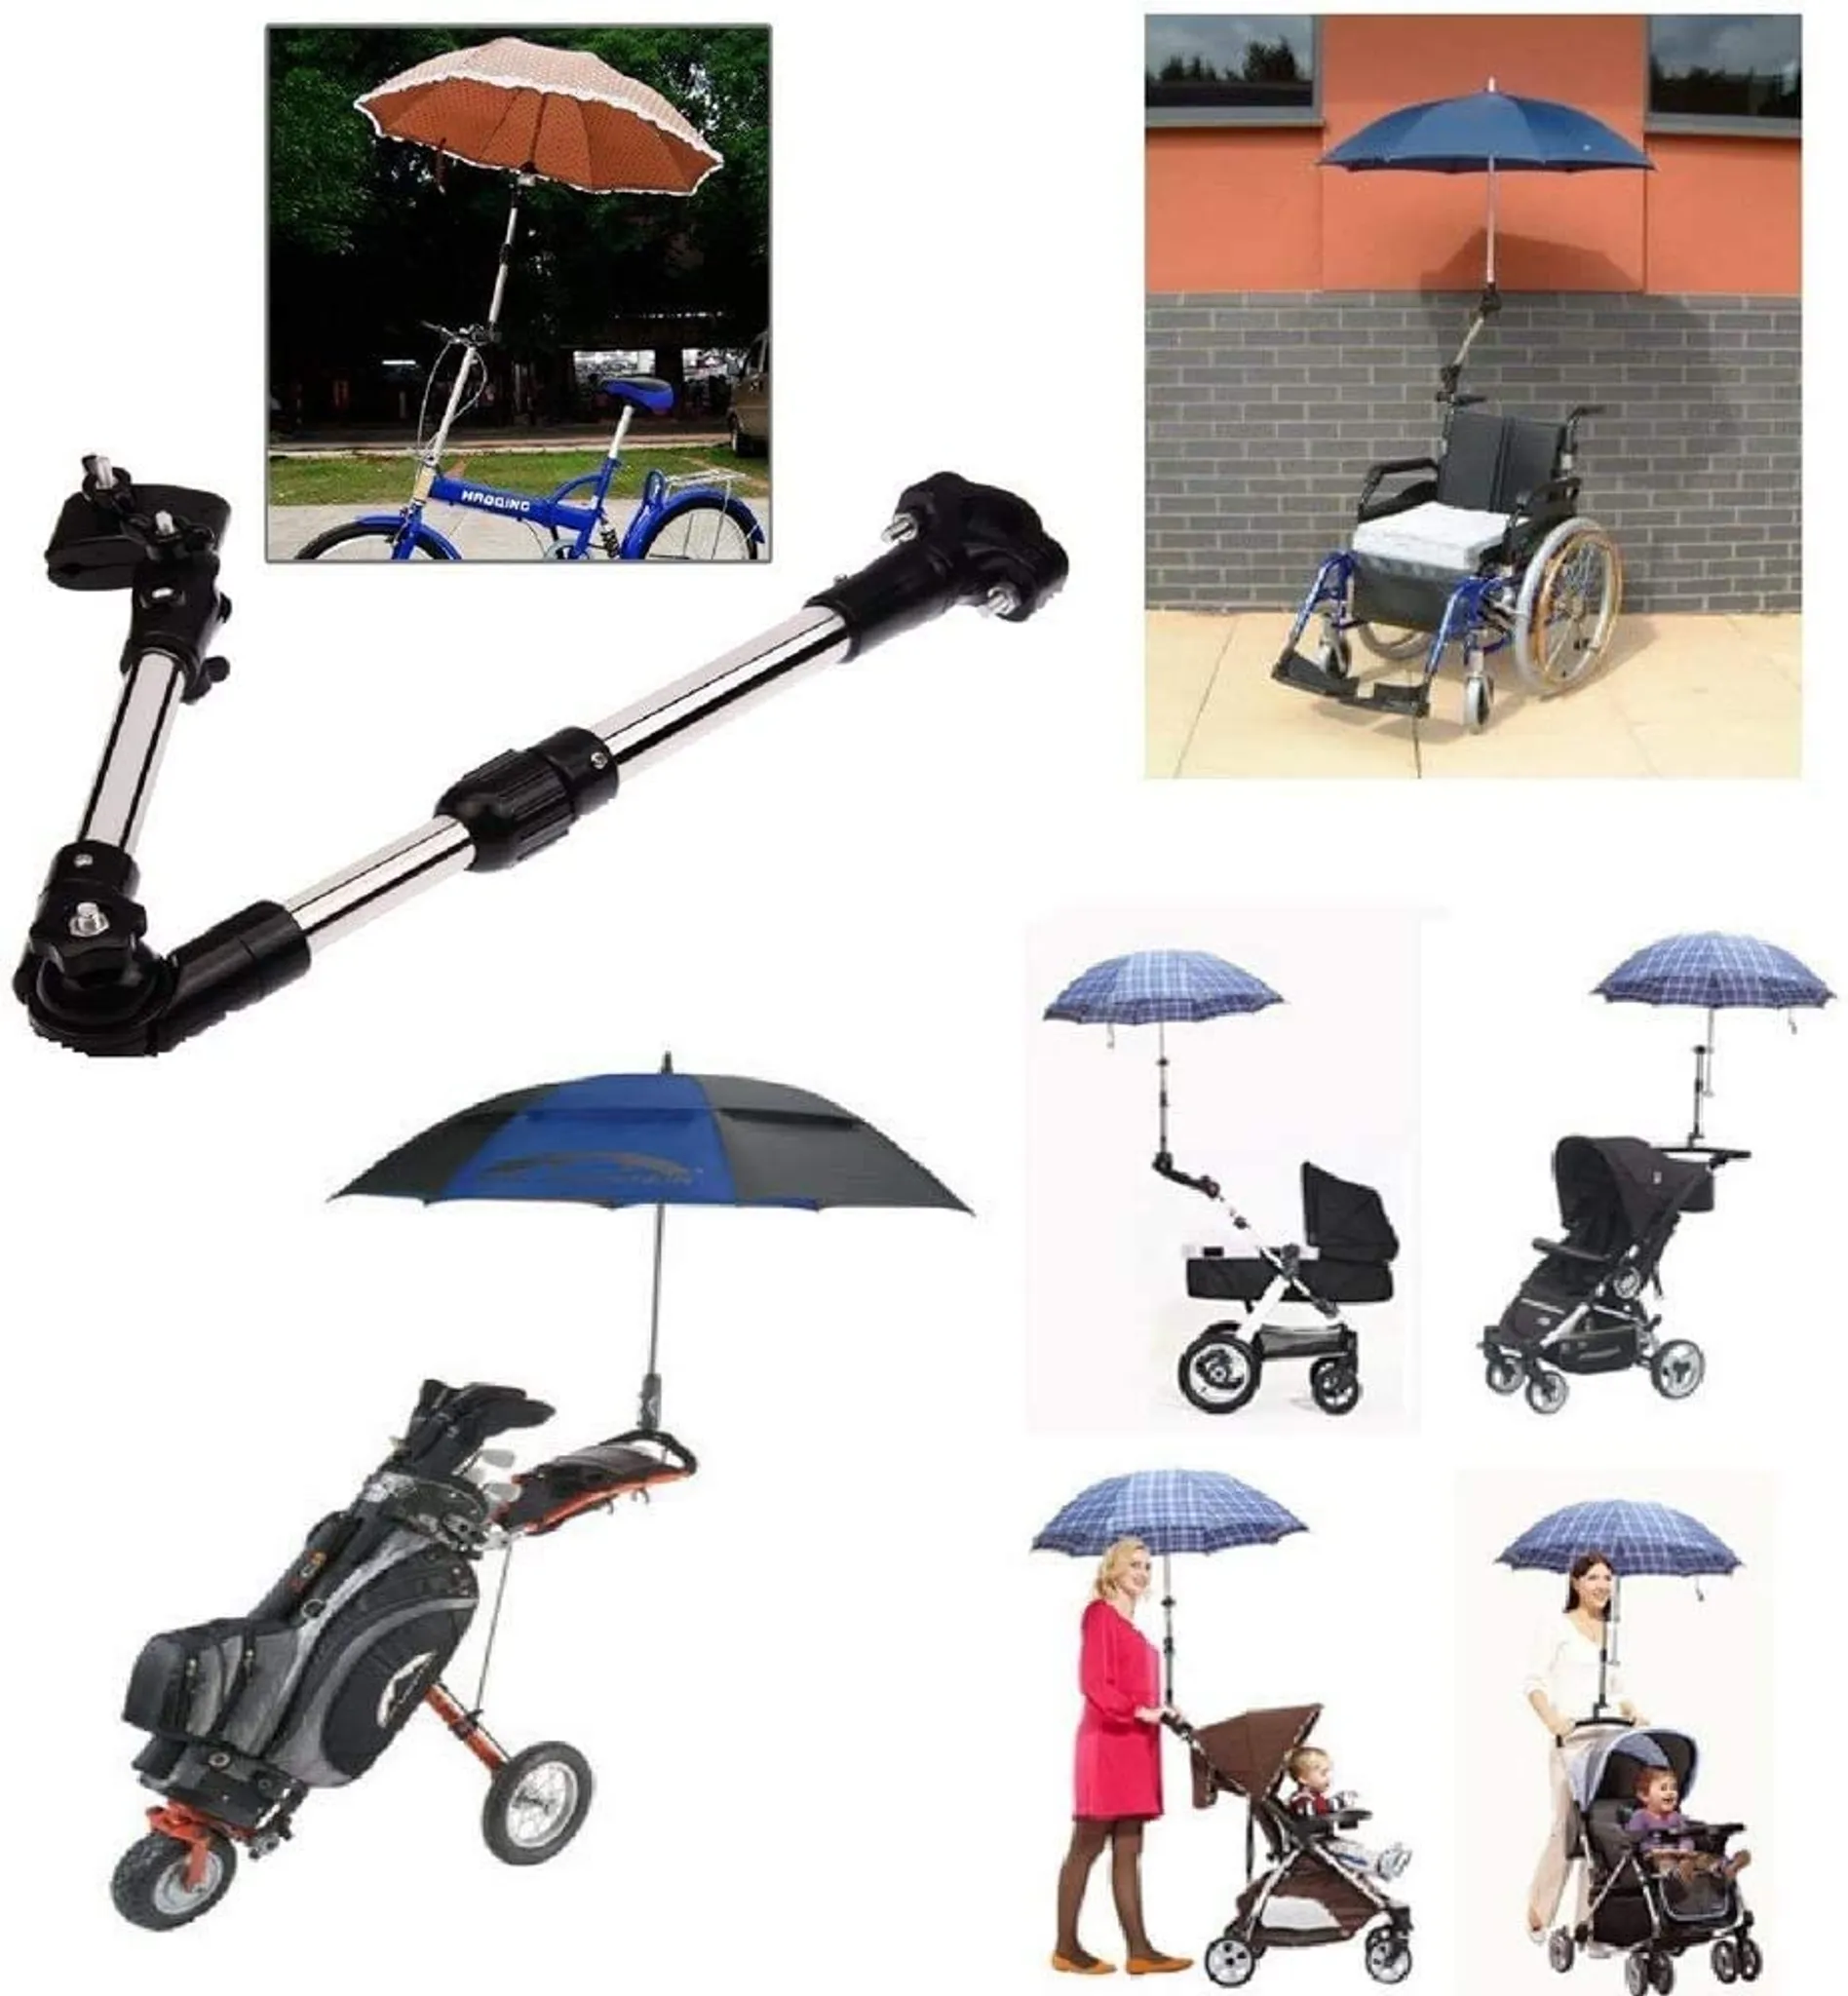 Binxory Verdicken Edelstahl Fahrrad Sonnenschirm Regenschirm Halterung Fahrrad Fahrradhalterung Ständerhalter Zubehör 